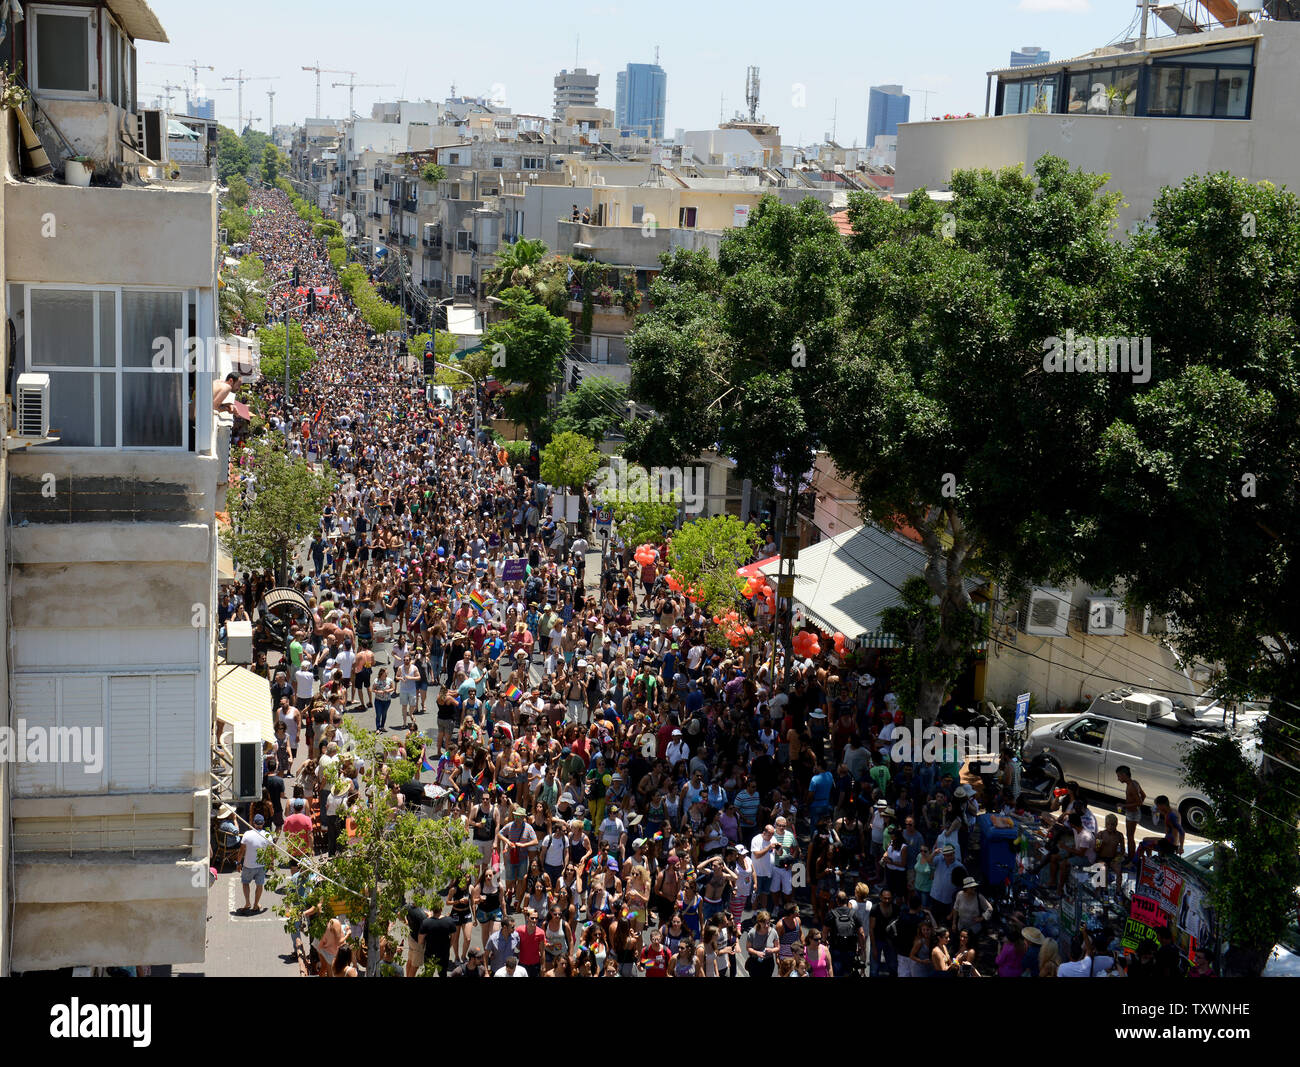 Einen Überblick über die Masse in der 17. jährliche Gay Pride Parade in Tel Aviv, Israel, 12. Juni 2015 marschieren. Mehr als 180.000 demonstrierten in die Parade, darunter 30.000 Touristen. Das Thema der Parade war "Tel Aviv liebt alle Geschlechter" in eine gleiche Rechte der Mitglieder Die transgender Community zu fördern. Foto von Debbie Hill/UPI Stockfoto